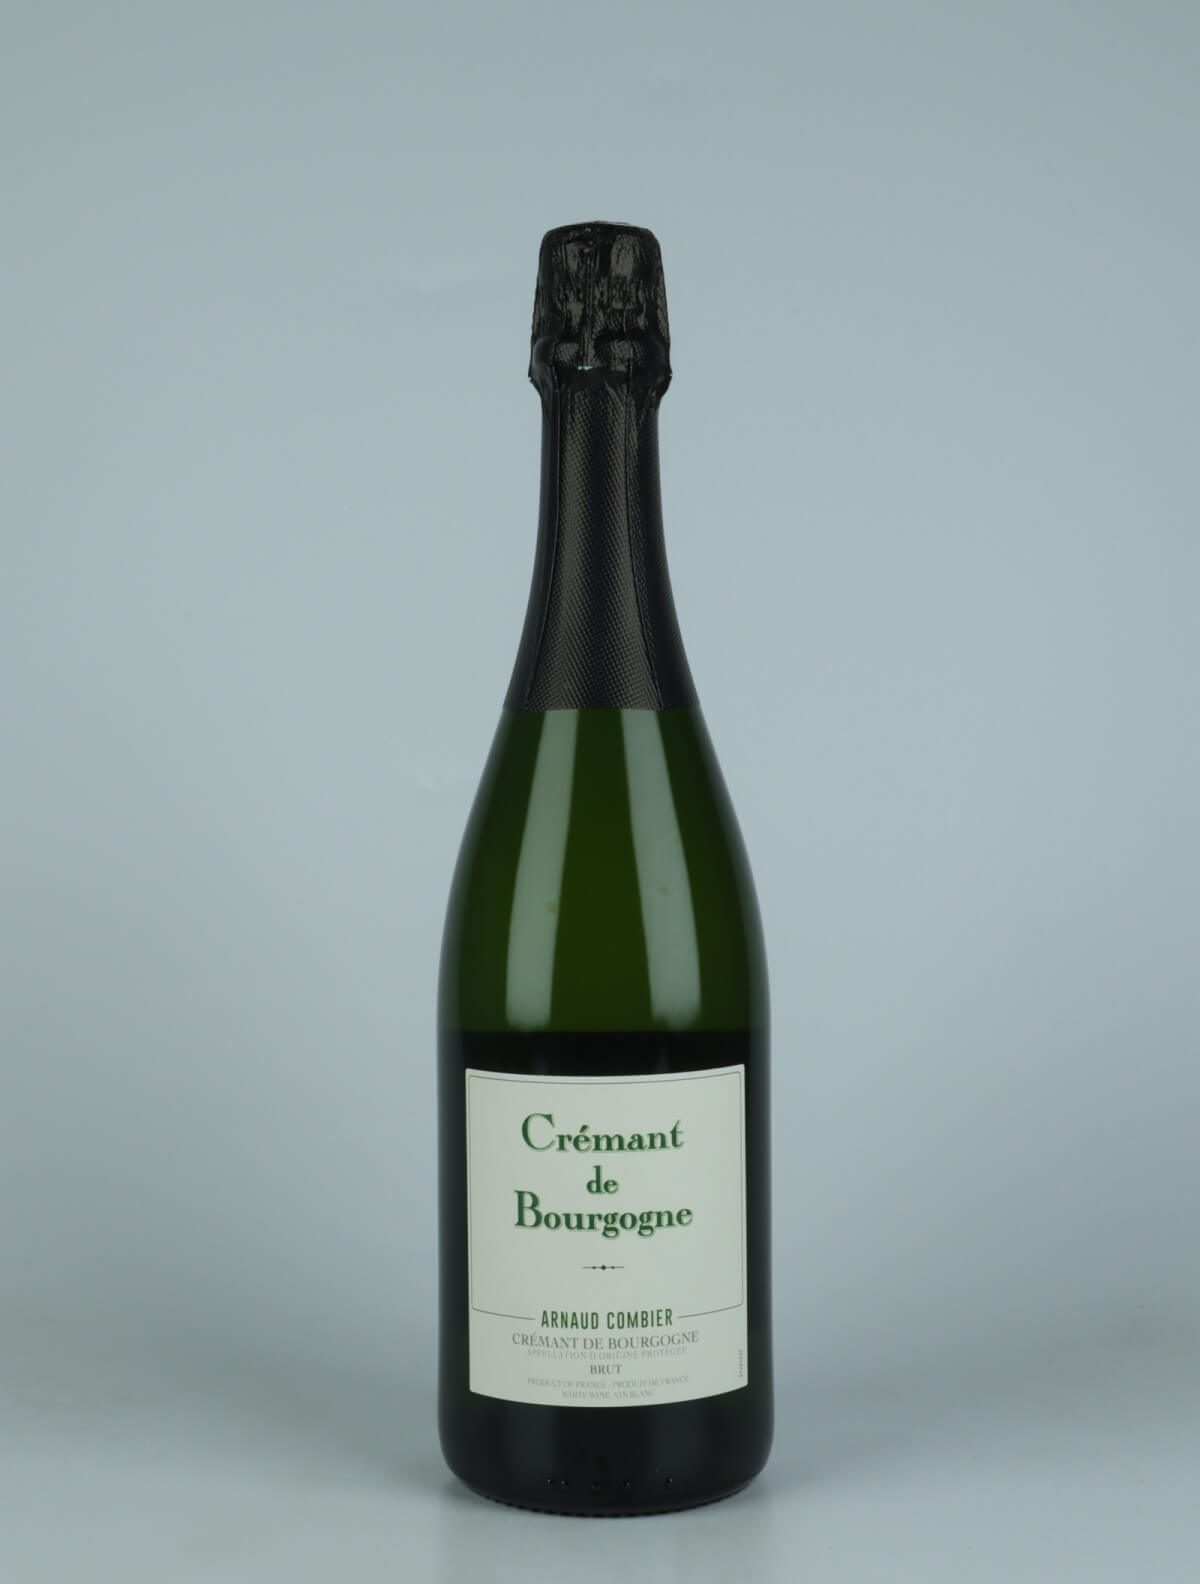 A bottle N.V. Crémant de Bourgogne Sparkling from Arnaud Combier, Burgundy in France